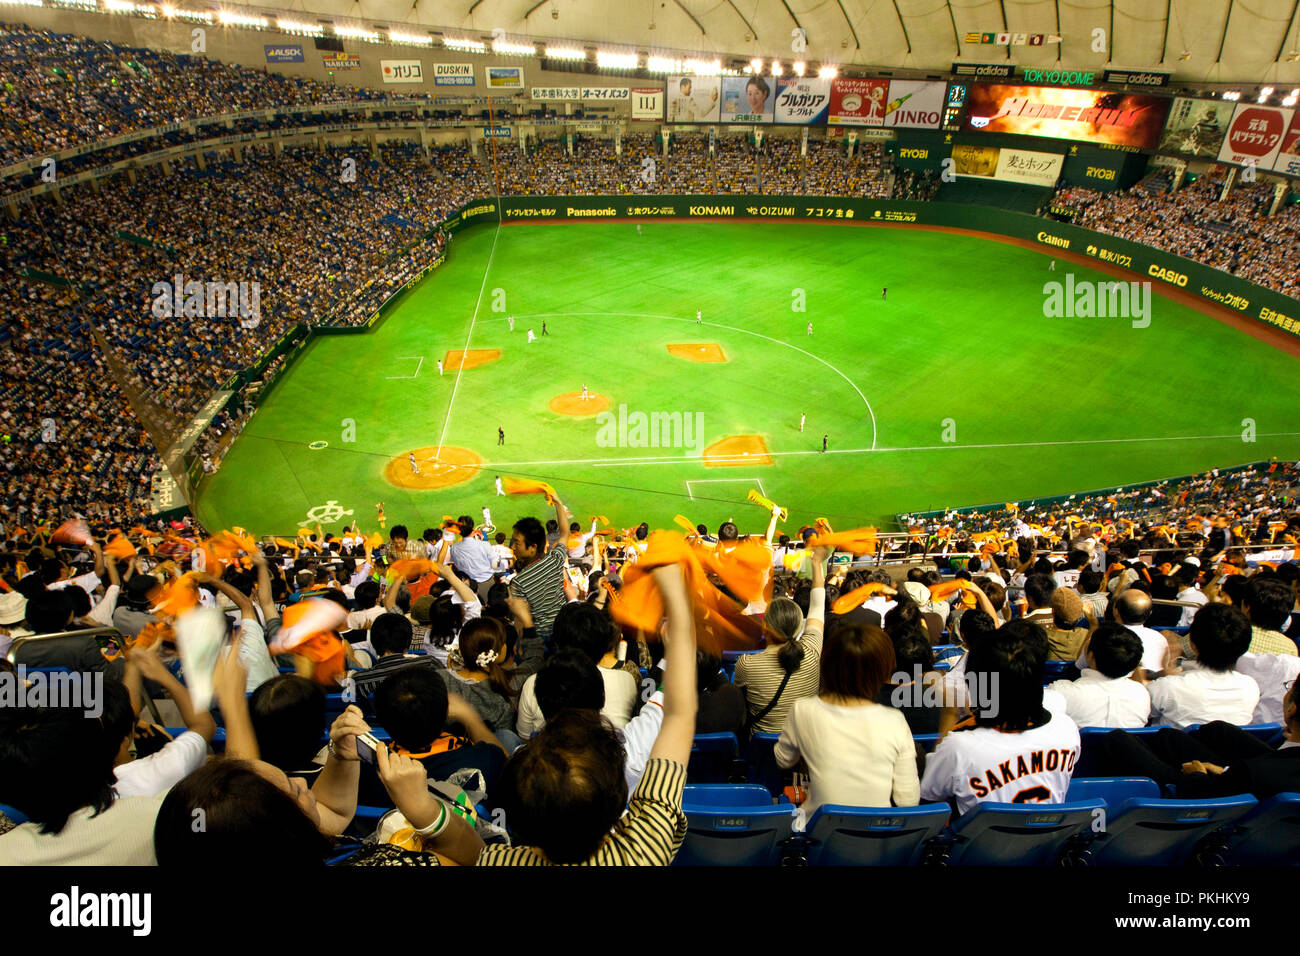 Le Tokyo Dome baseball stadium à Tokyo le 17 septembre 2009. La vague des fans bannières orange pour leur équipe les Yomiuri Giants. Vue grand angle du haut Banque D'Images